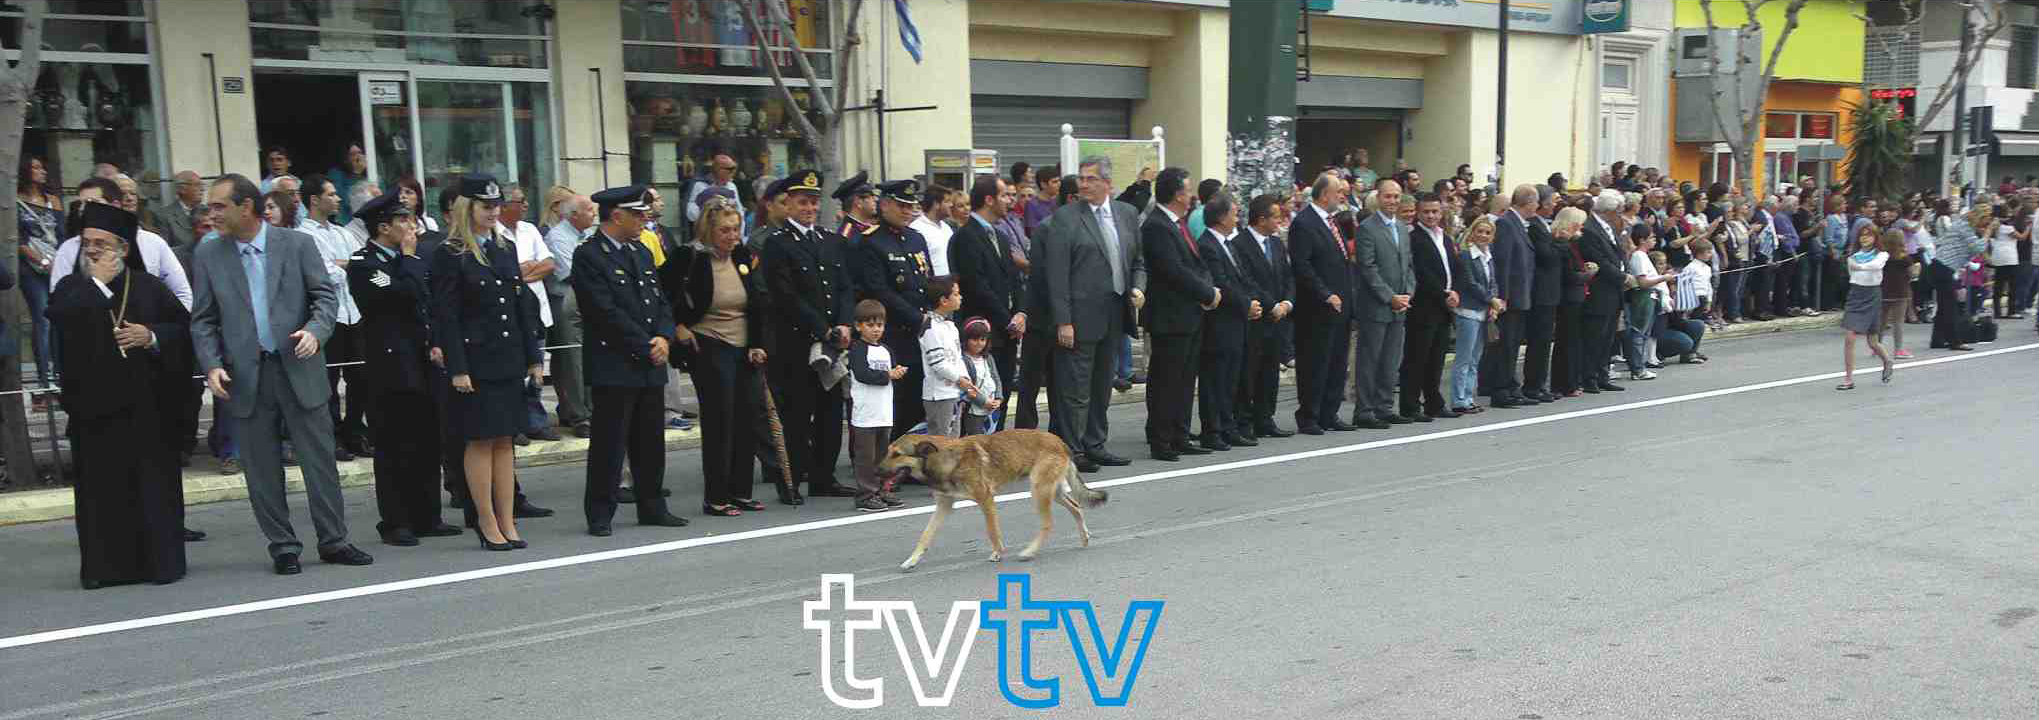 Λουτράκι Παρέλαση 28 οκτωβρίου 4  tvtv